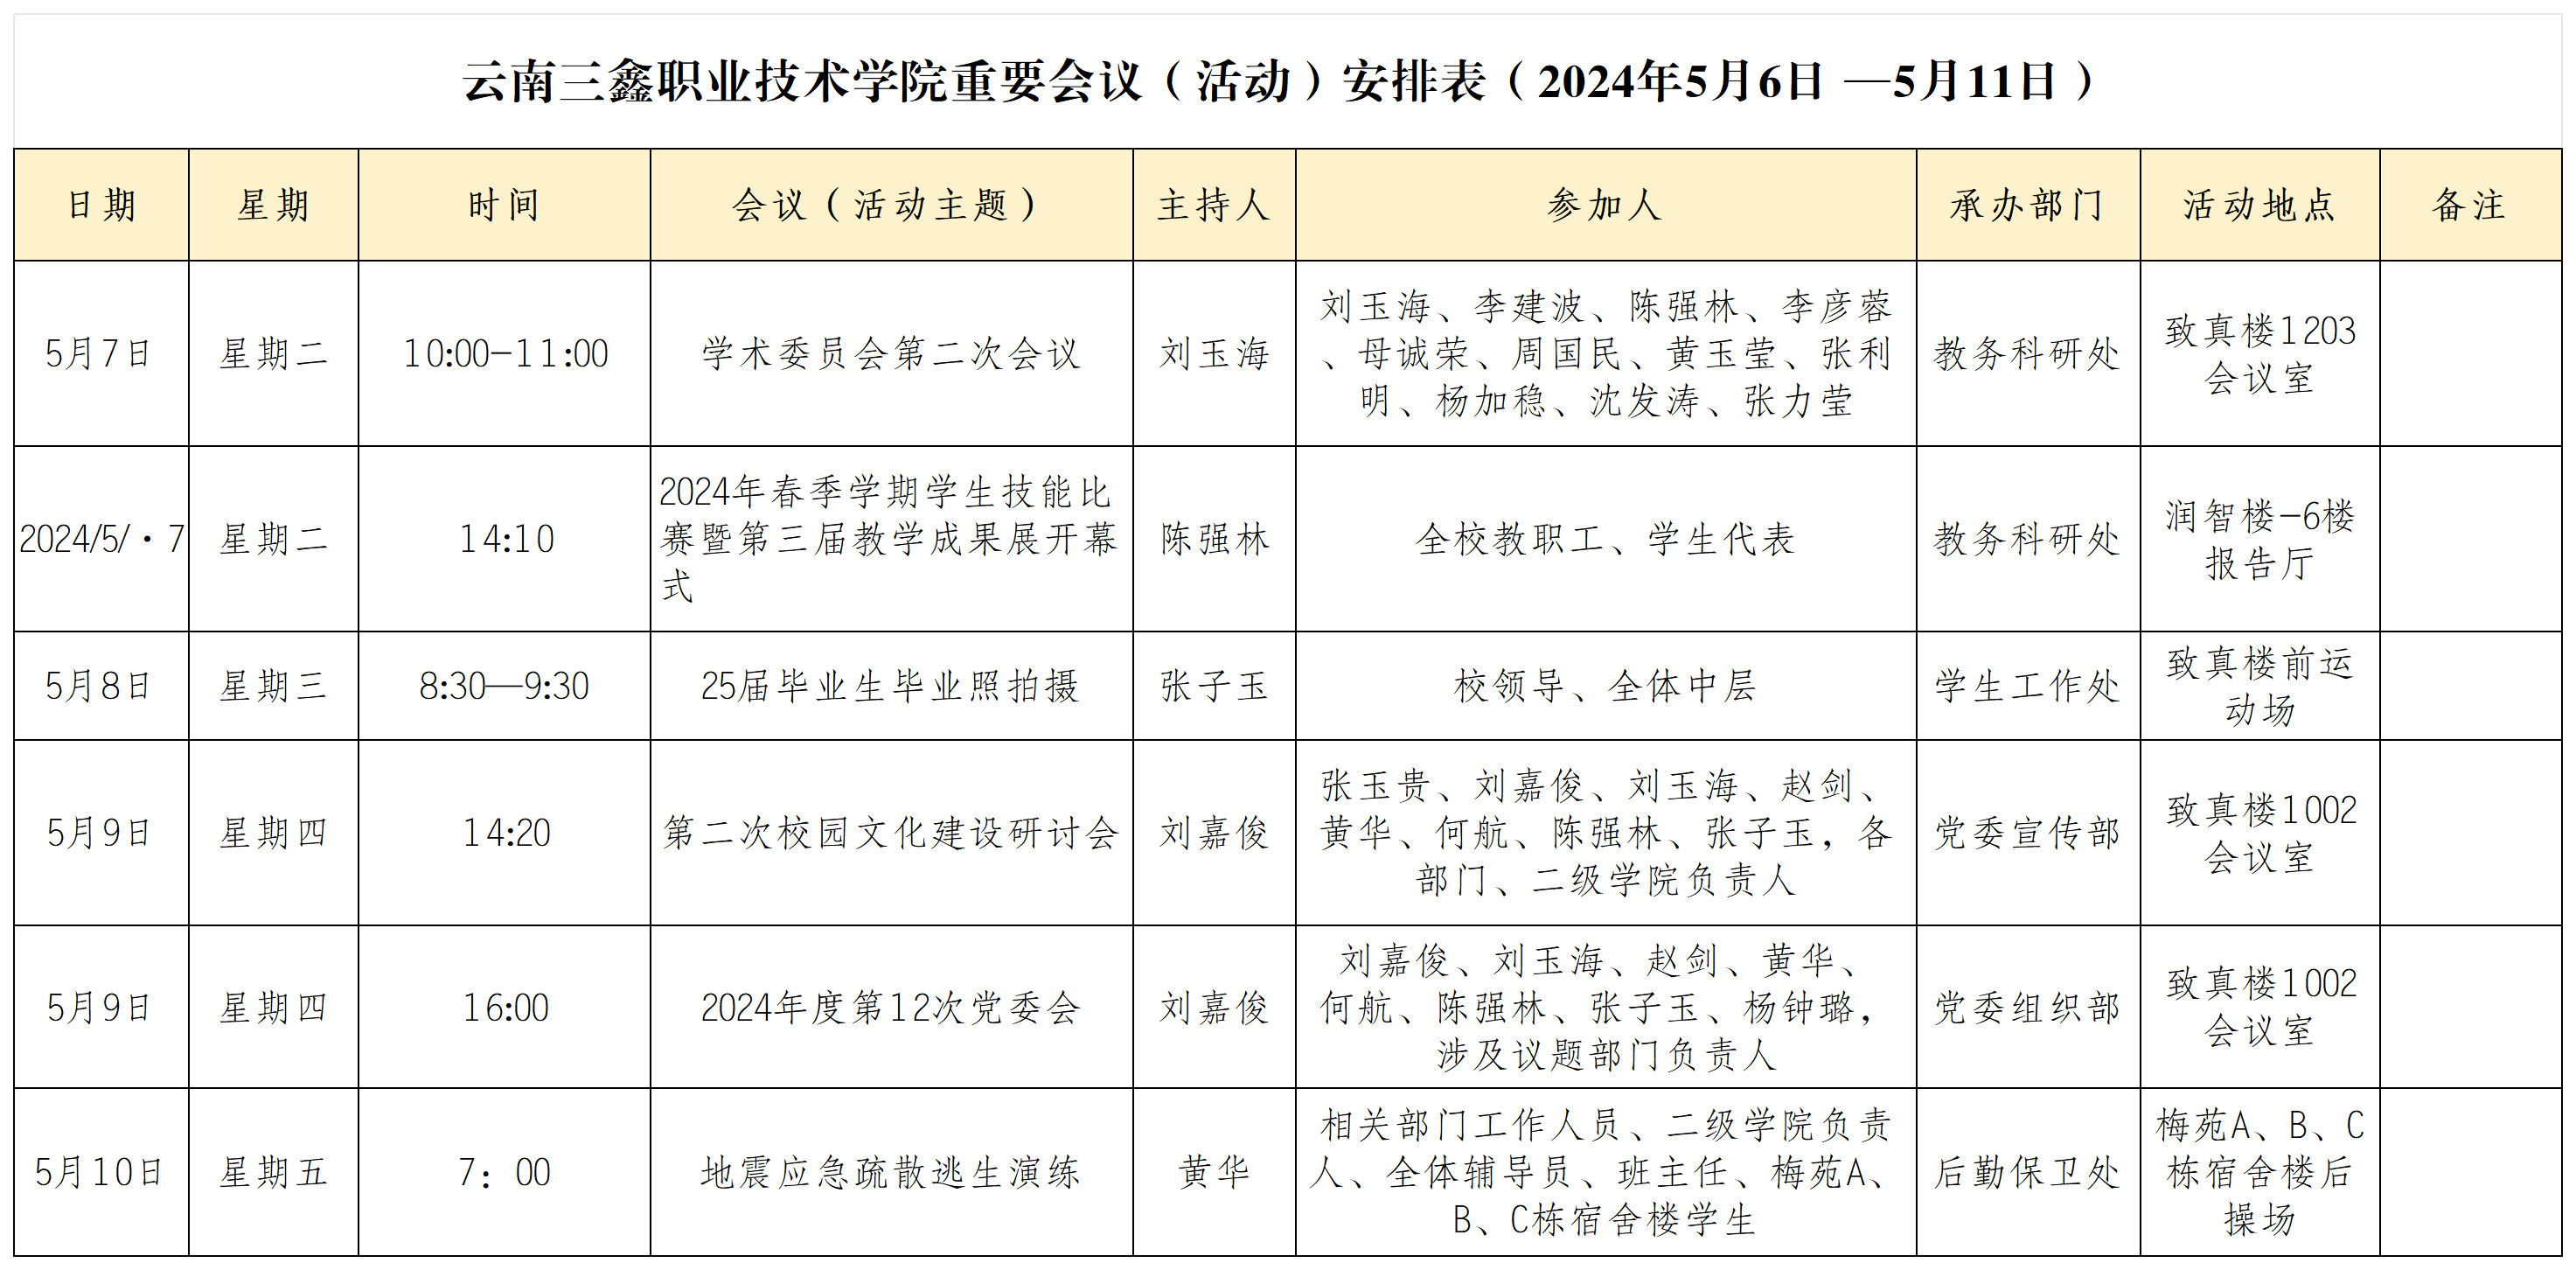 云南三鑫职业技术学院重要会议（活动）安排表（2024年5月6日 —5月11日）